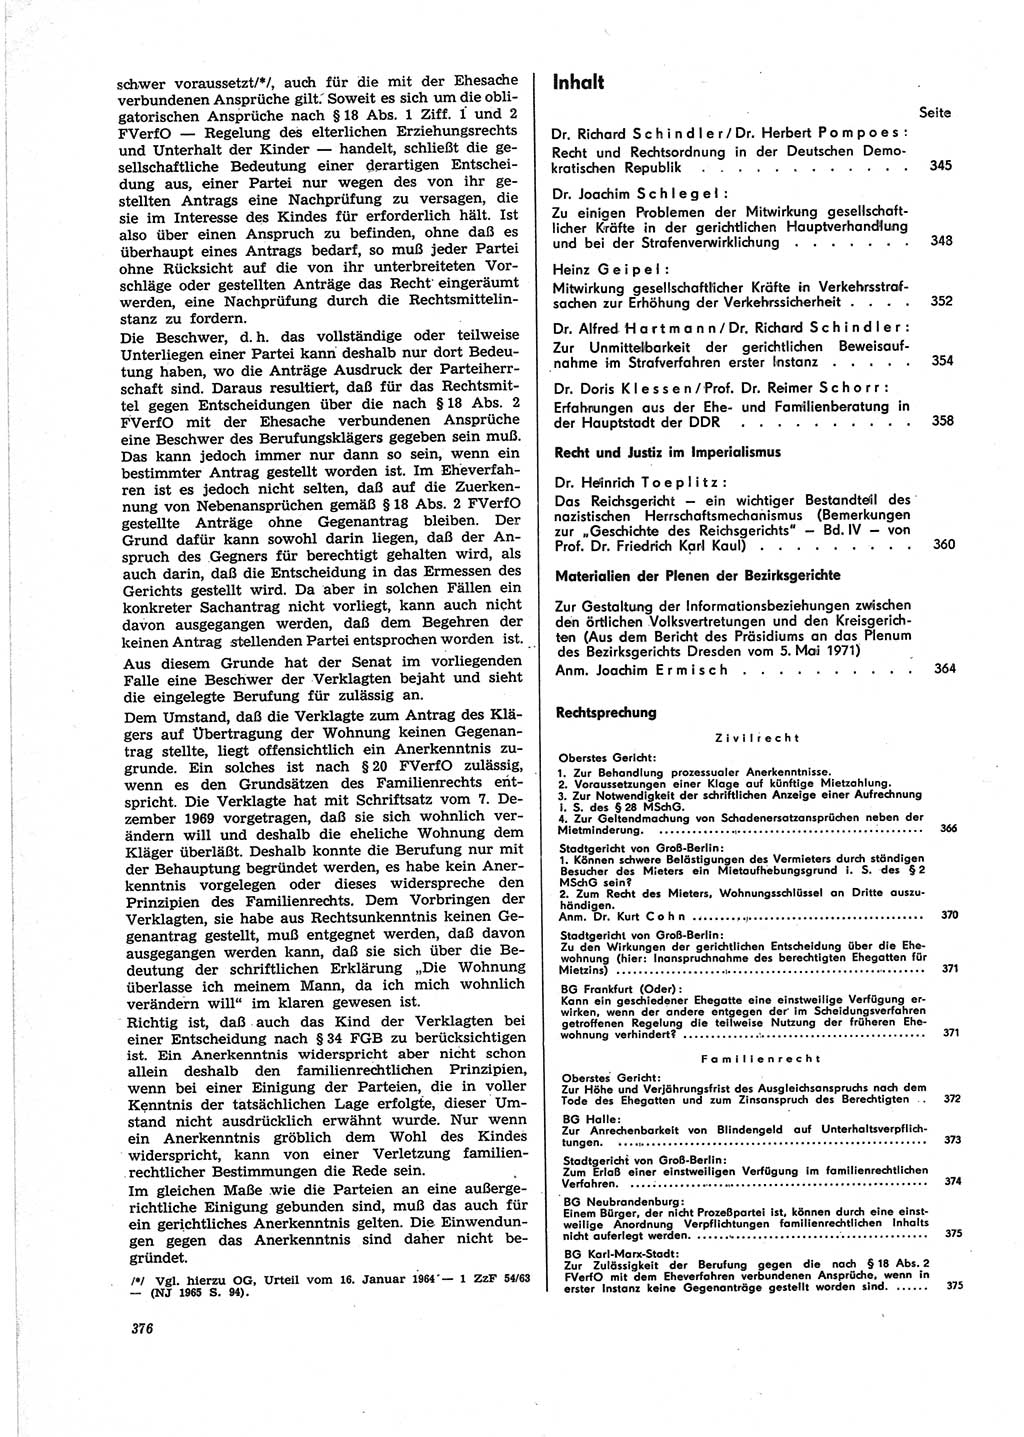 Neue Justiz (NJ), Zeitschrift für Recht und Rechtswissenschaft [Deutsche Demokratische Republik (DDR)], 25. Jahrgang 1971, Seite 376 (NJ DDR 1971, S. 376)